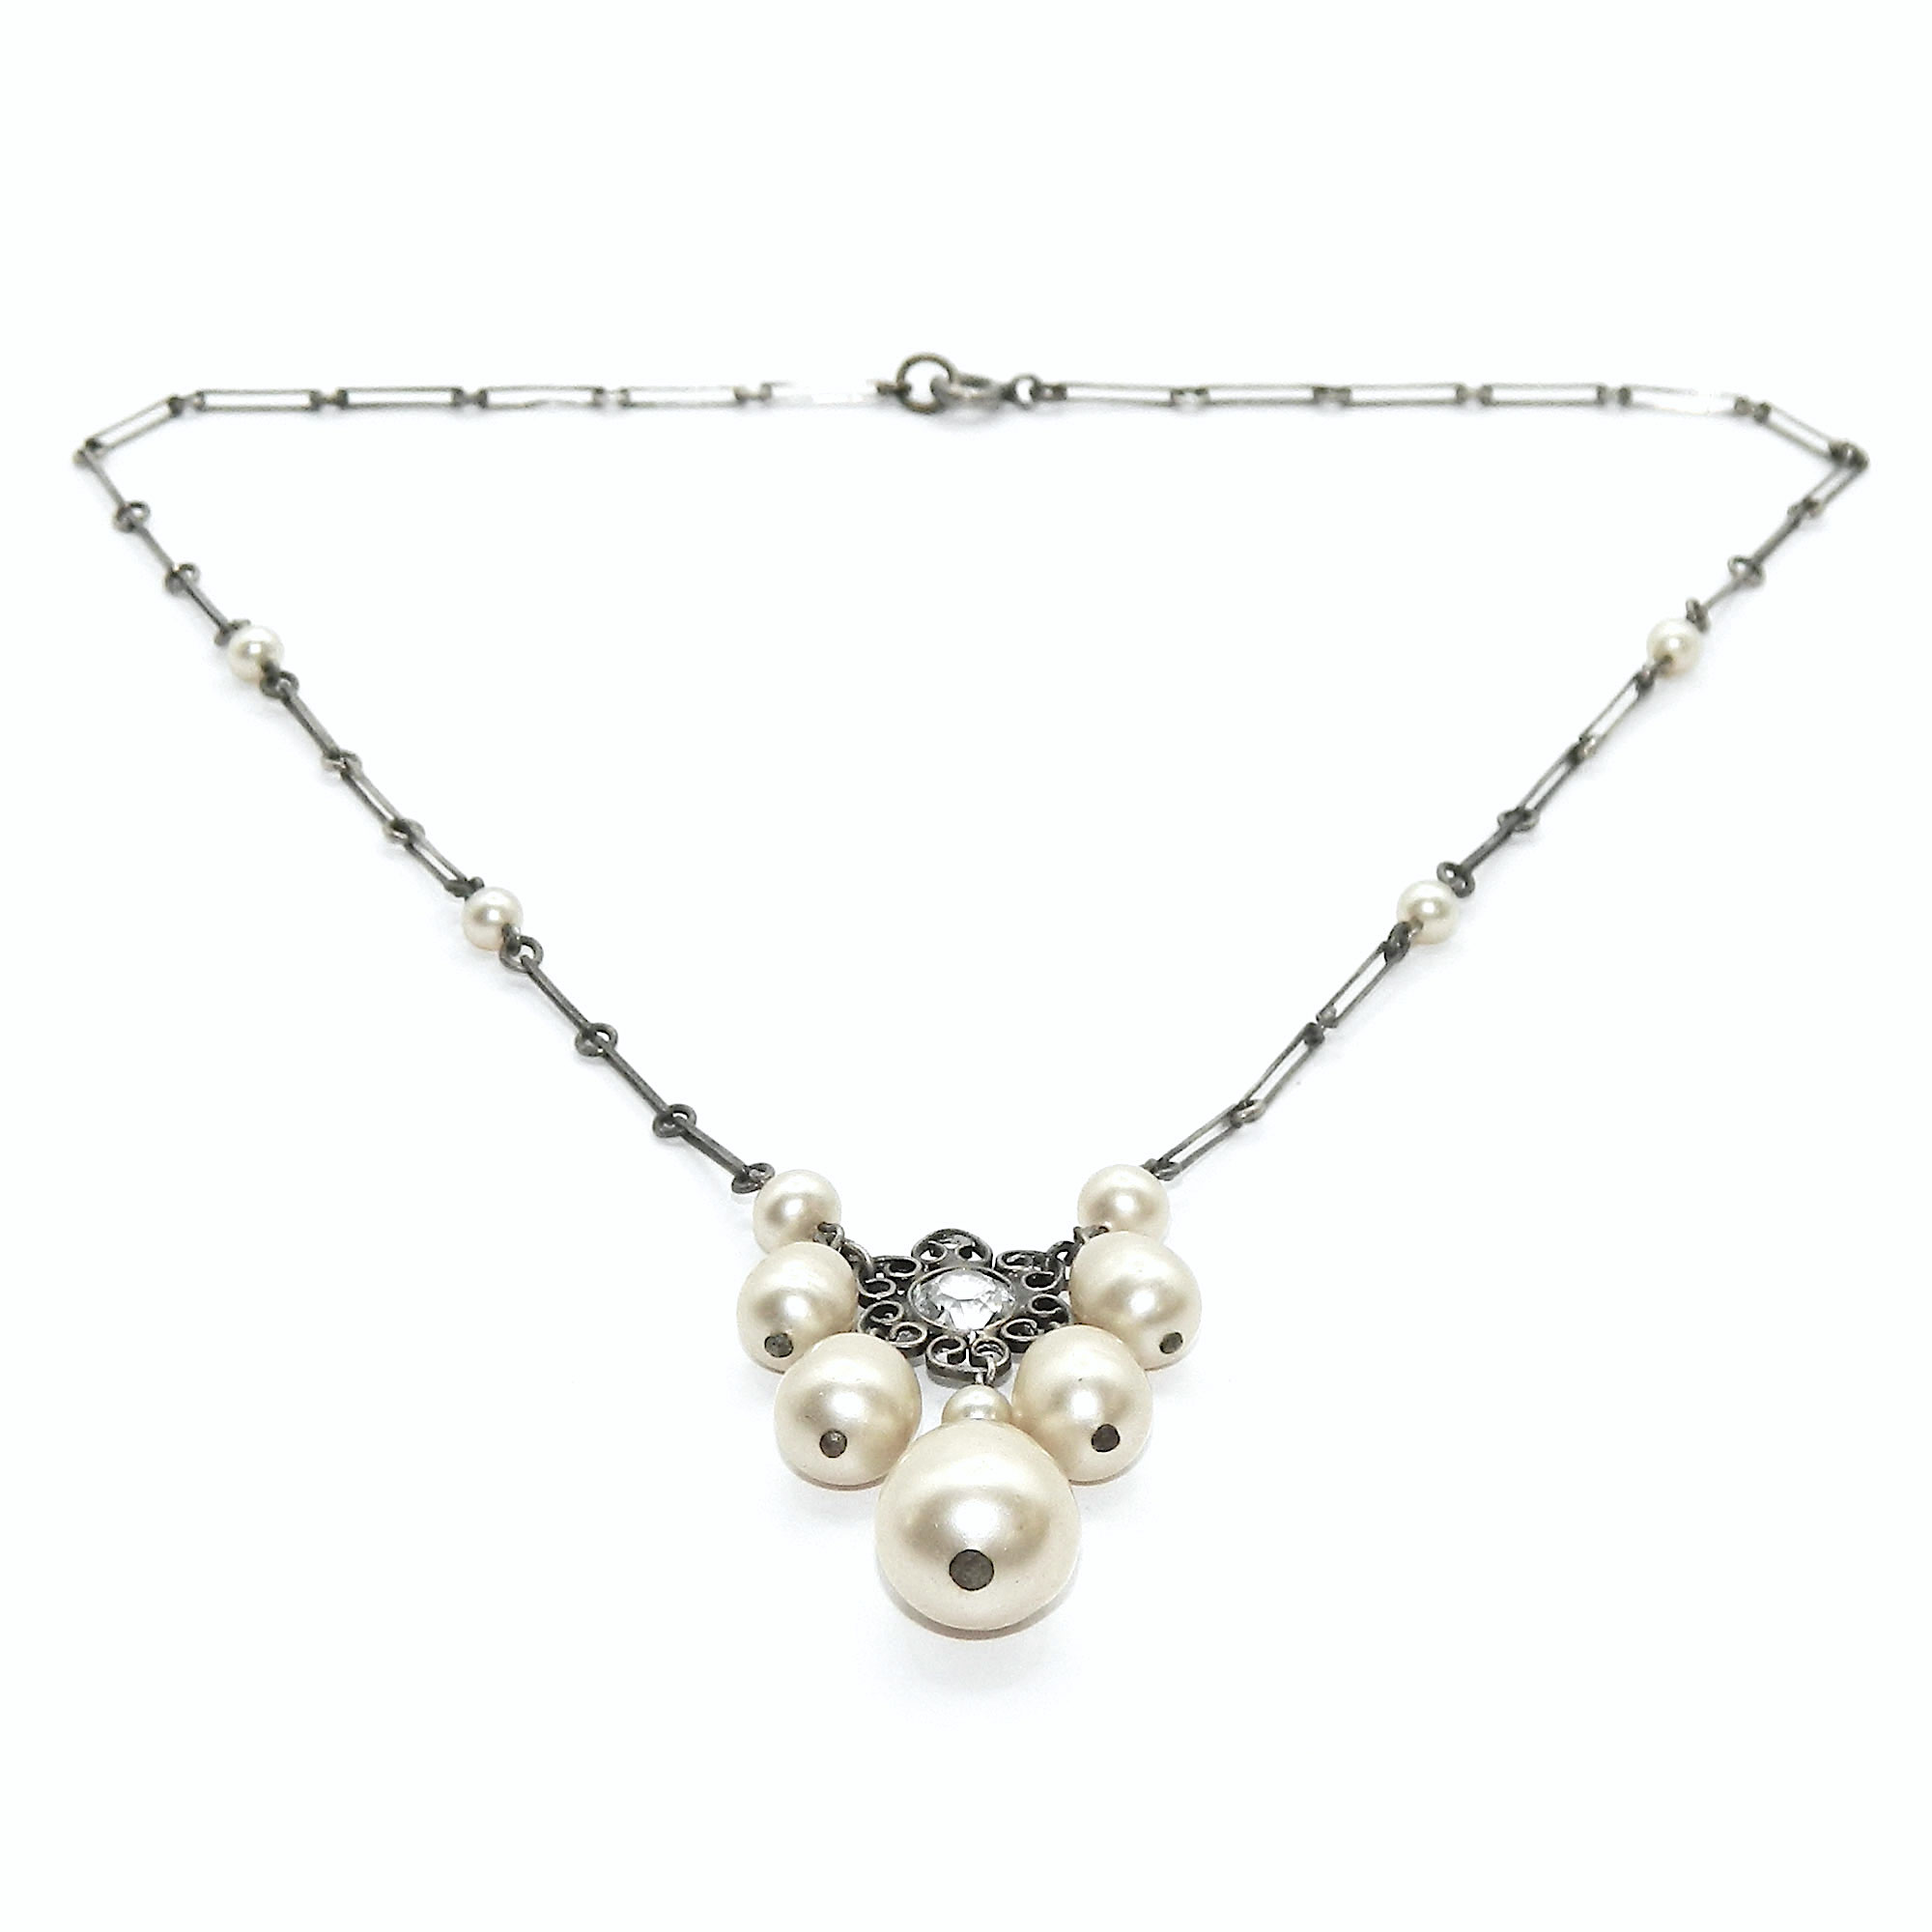 Faux pearl pendant necklace